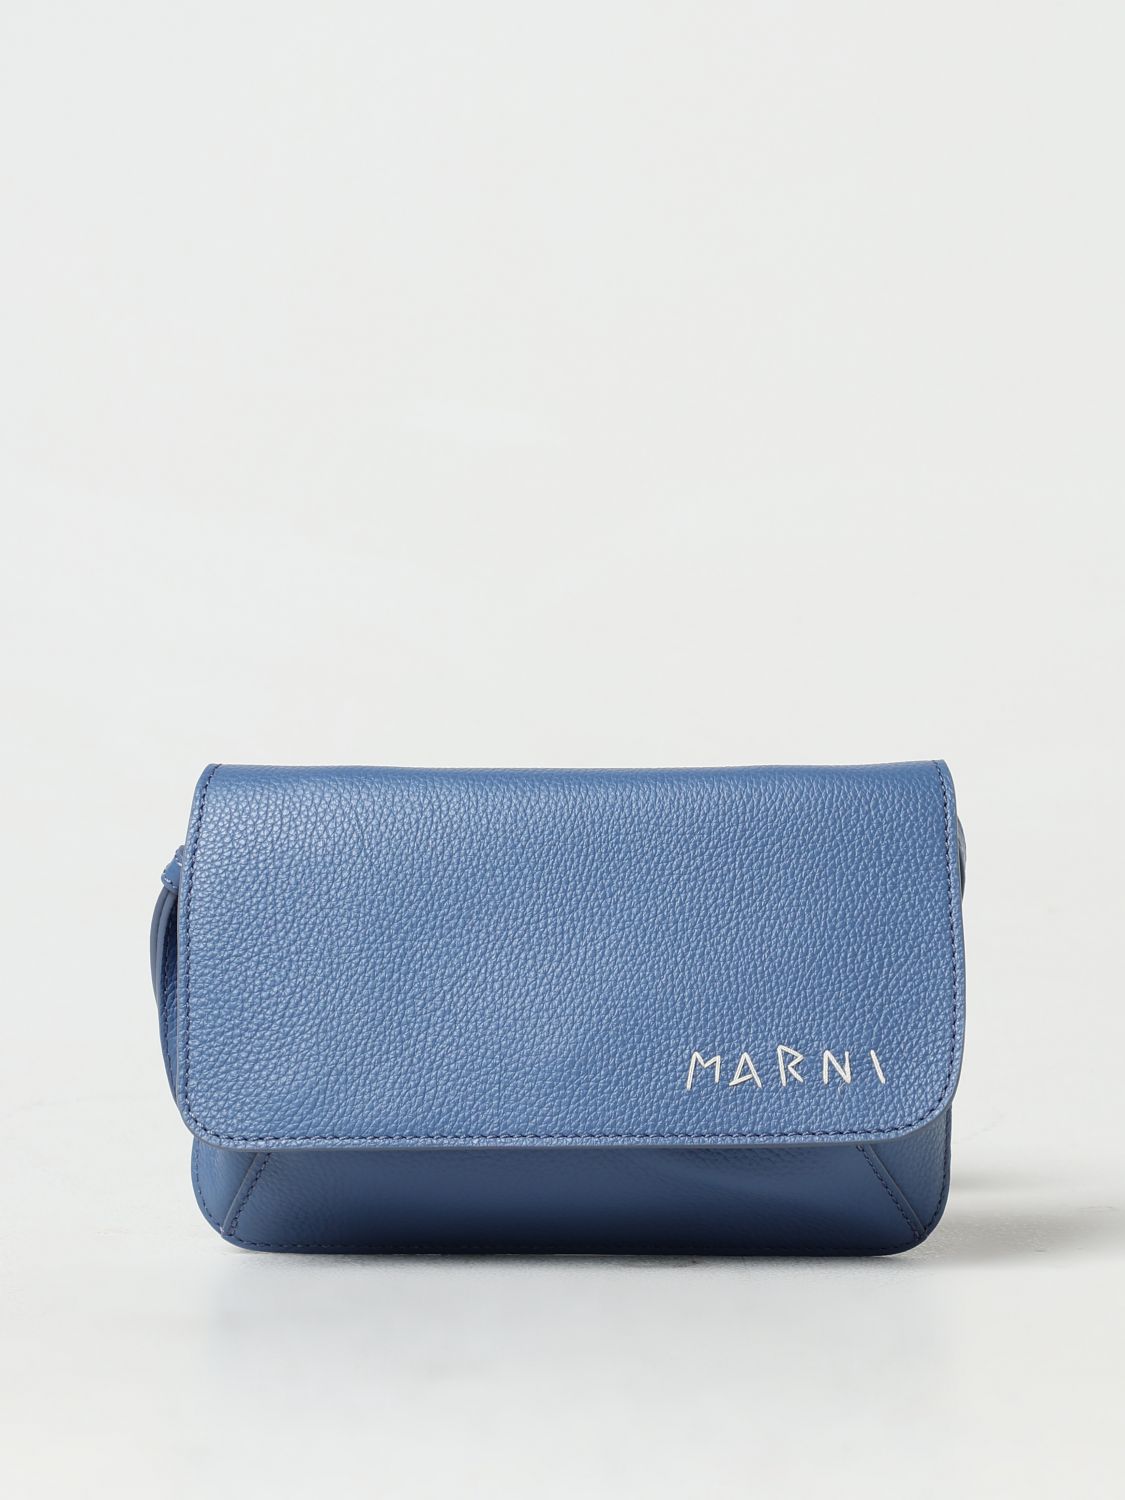 Marni Handbag MARNI Woman color Gnawed Blue